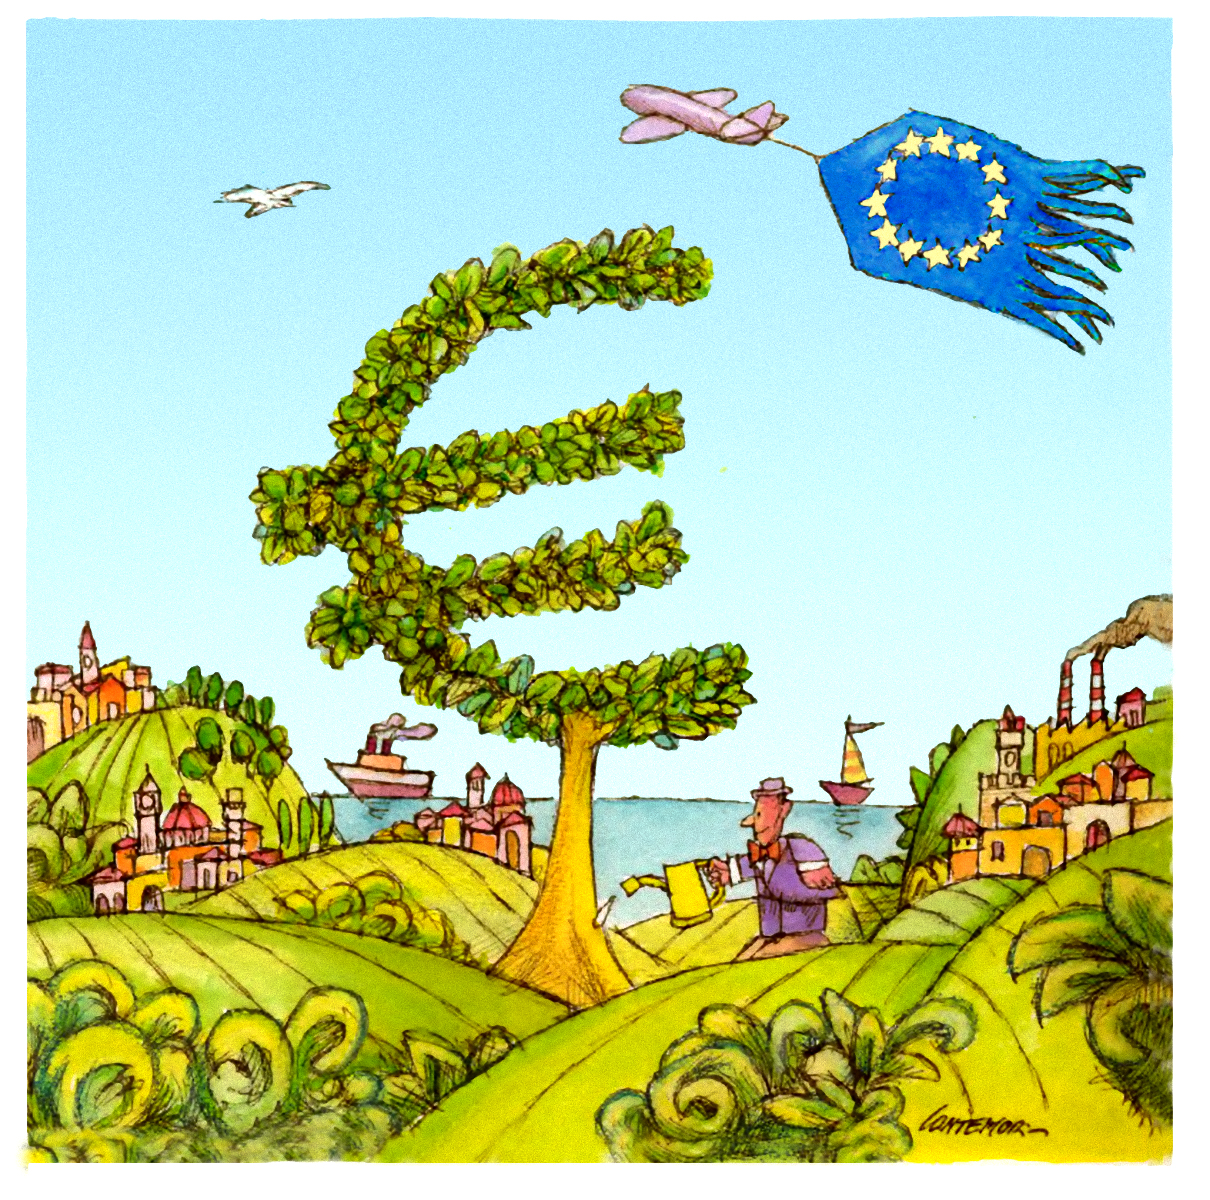 Piano di ripresa economica dell’UE: una nuova epoca